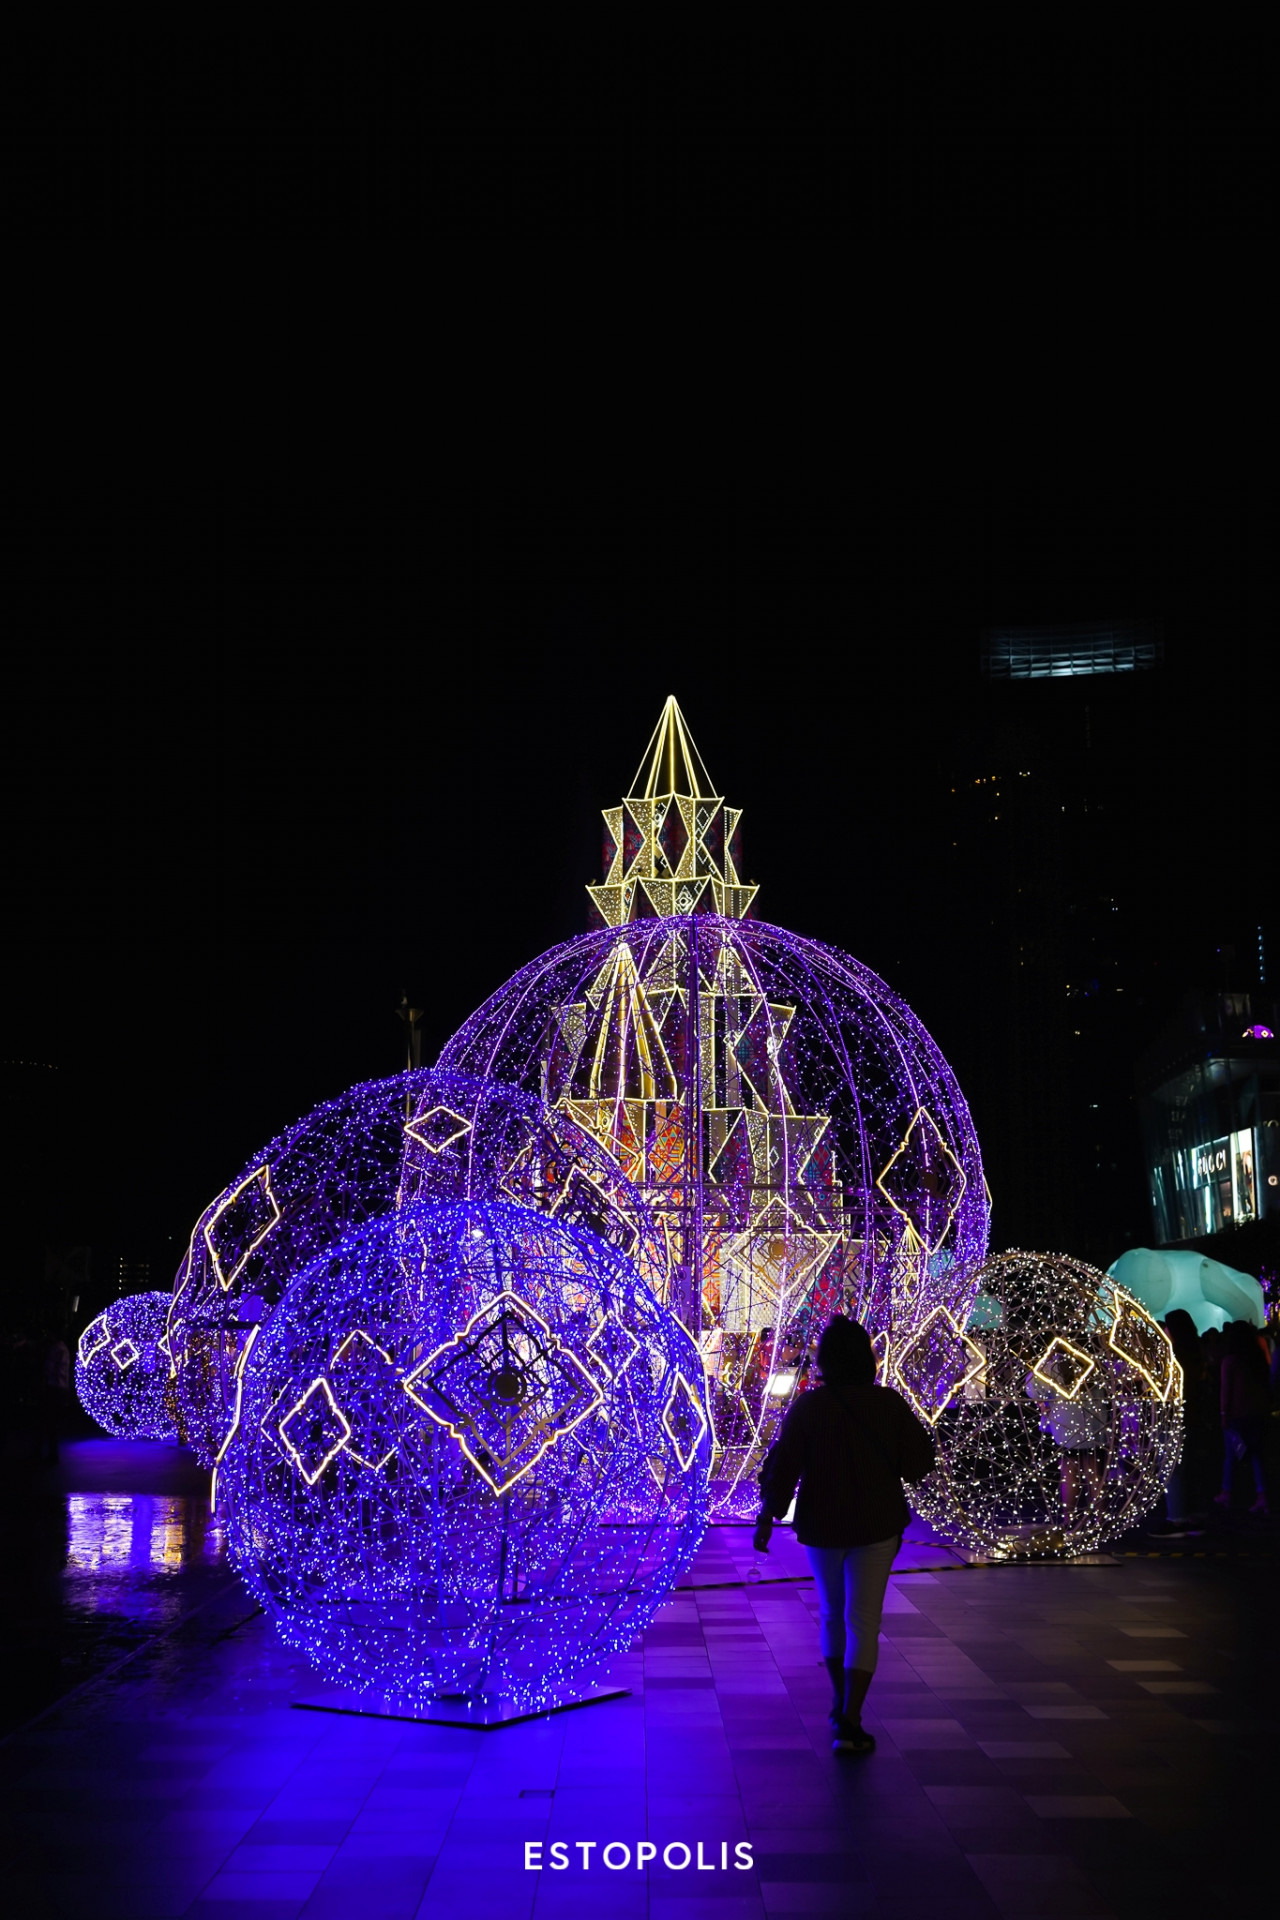 รีวิวเทศกาลงานไฟ ICONSIAM 2020 บอลไฟชั้นล่างฝั่งซ้าย Bangkok Illumination 2020 At ICONSIAM